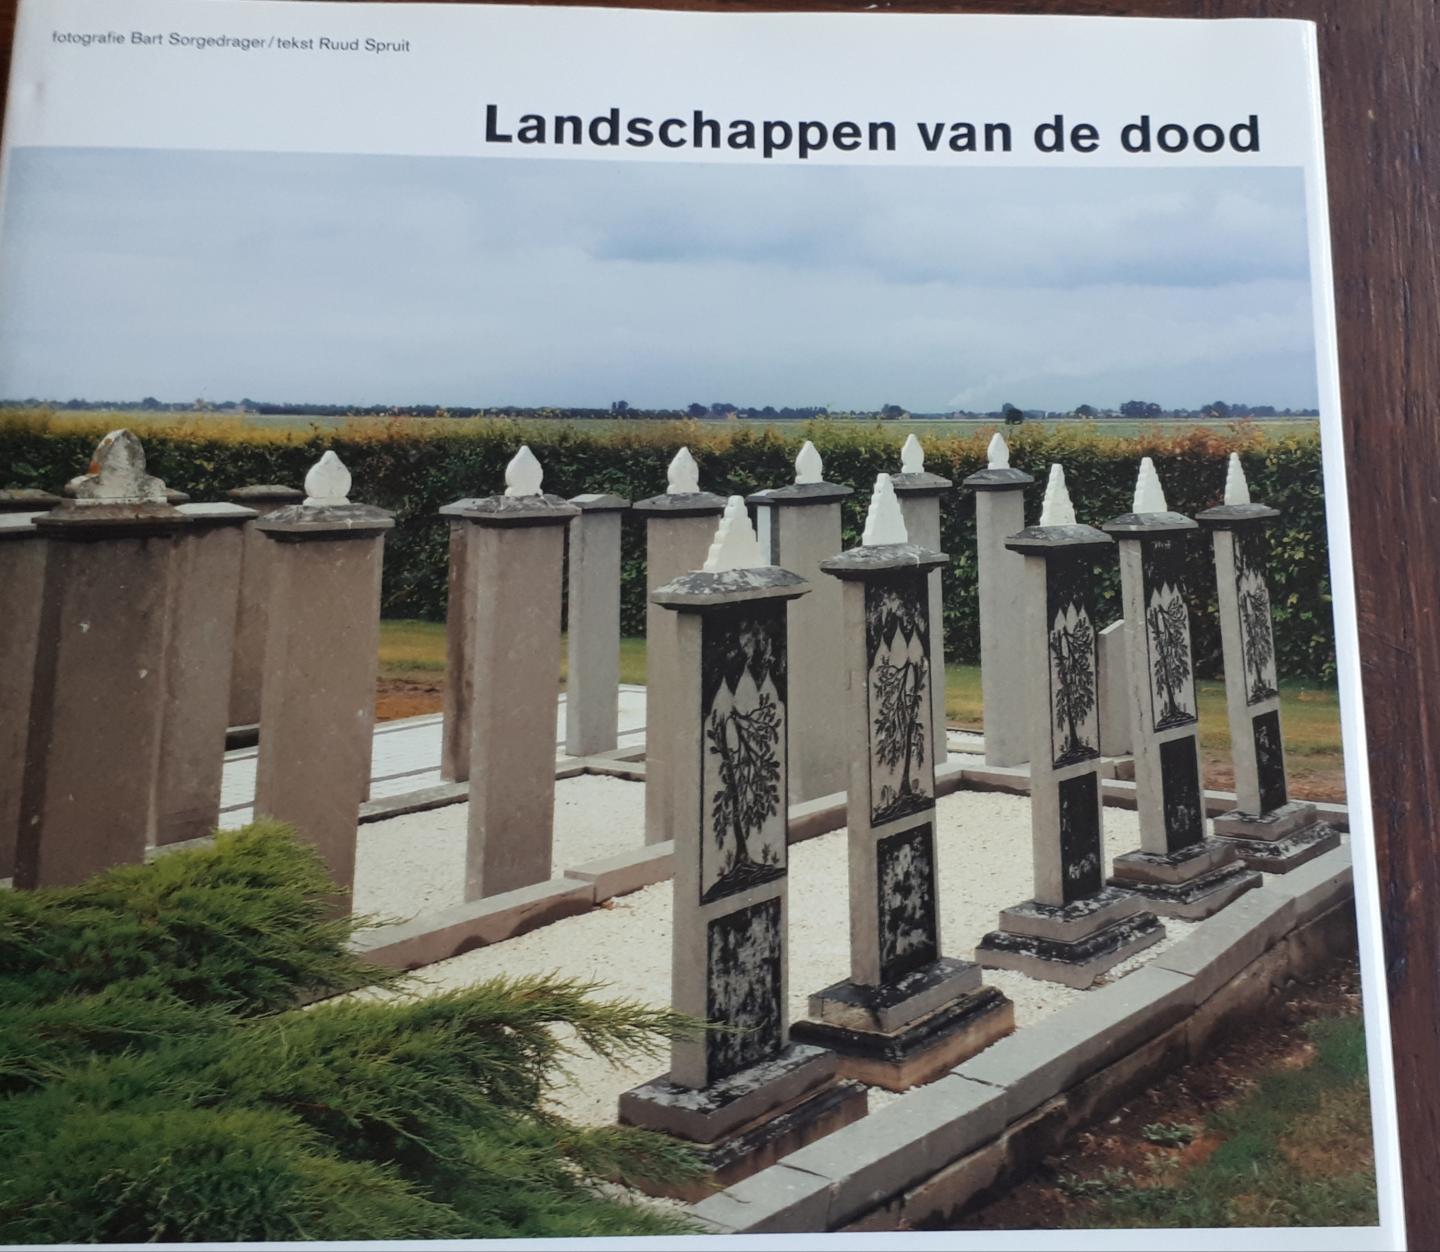 SORGEDRAGER, Bart (fotografie) en SPRUIT, Ruud (tekst) - Landschappen van de dood